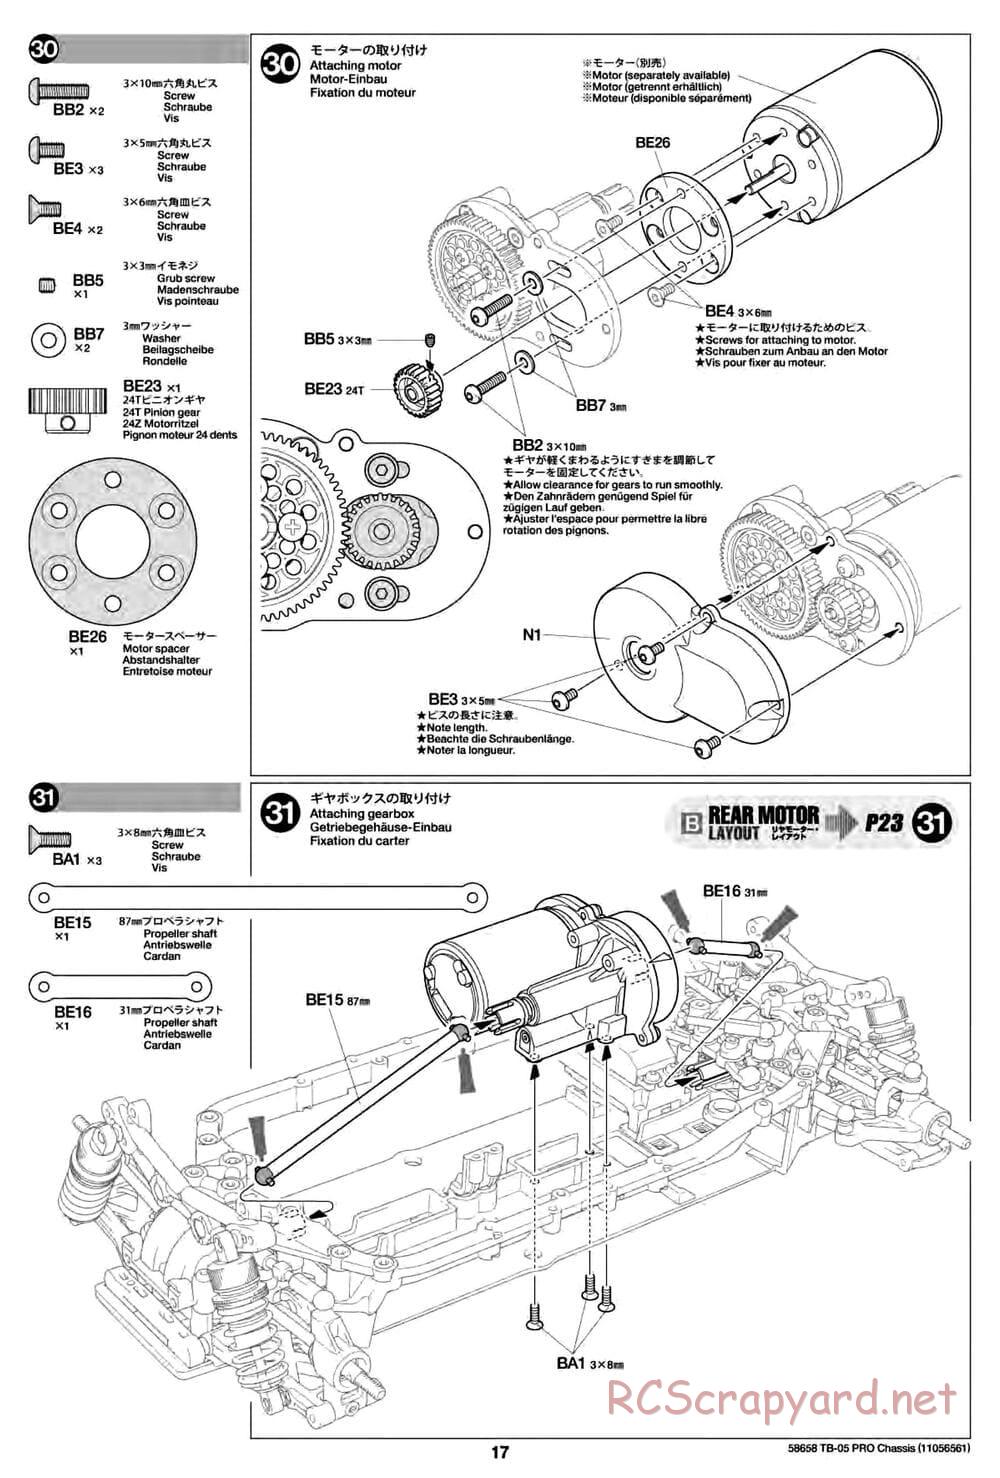 Tamiya - TB-05 Pro Chassis - Manual - Page 17